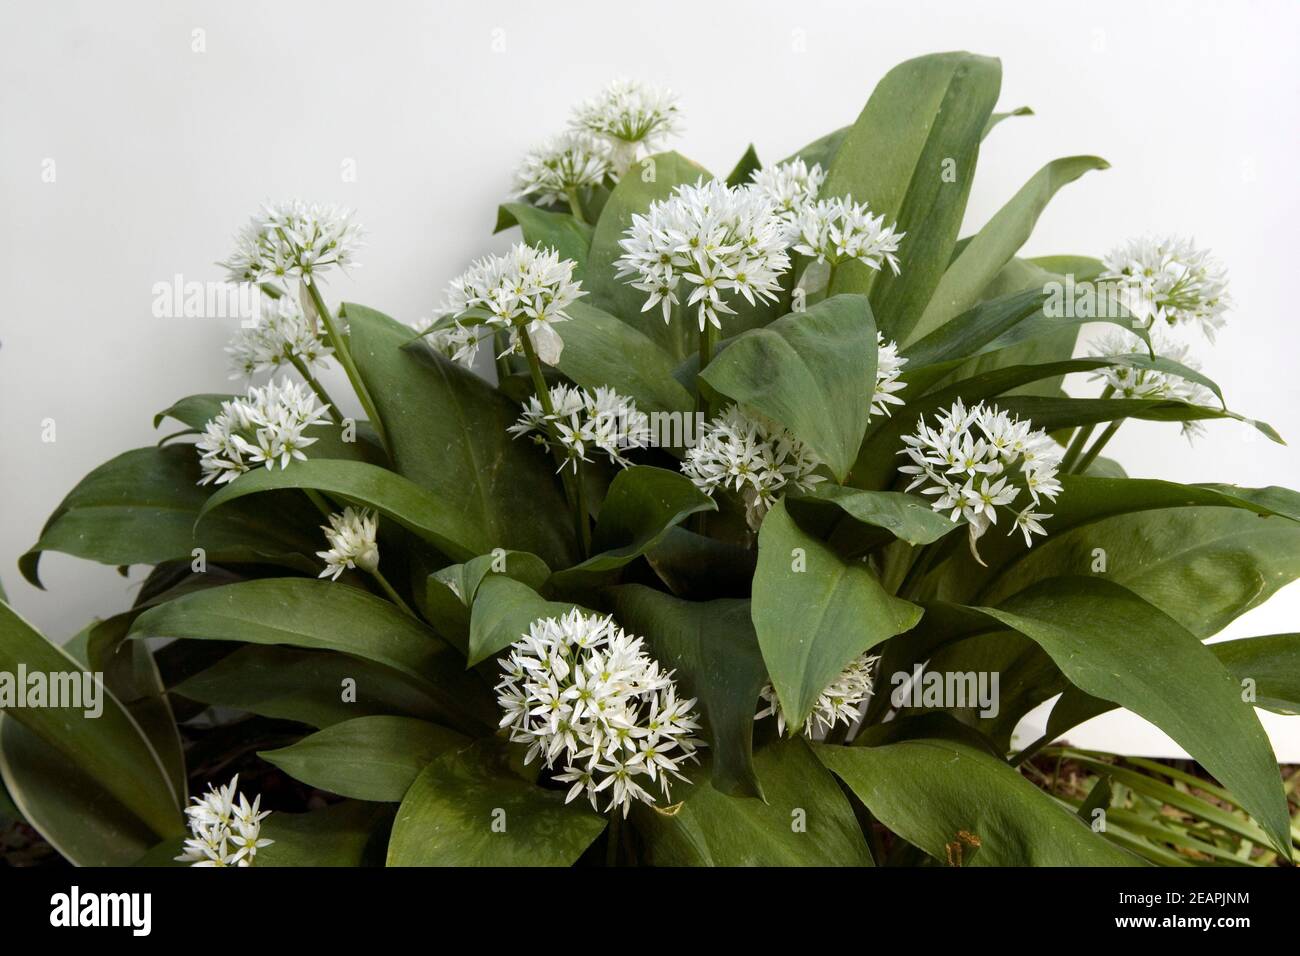 Baerlauch Allium ursinum Foto Stock